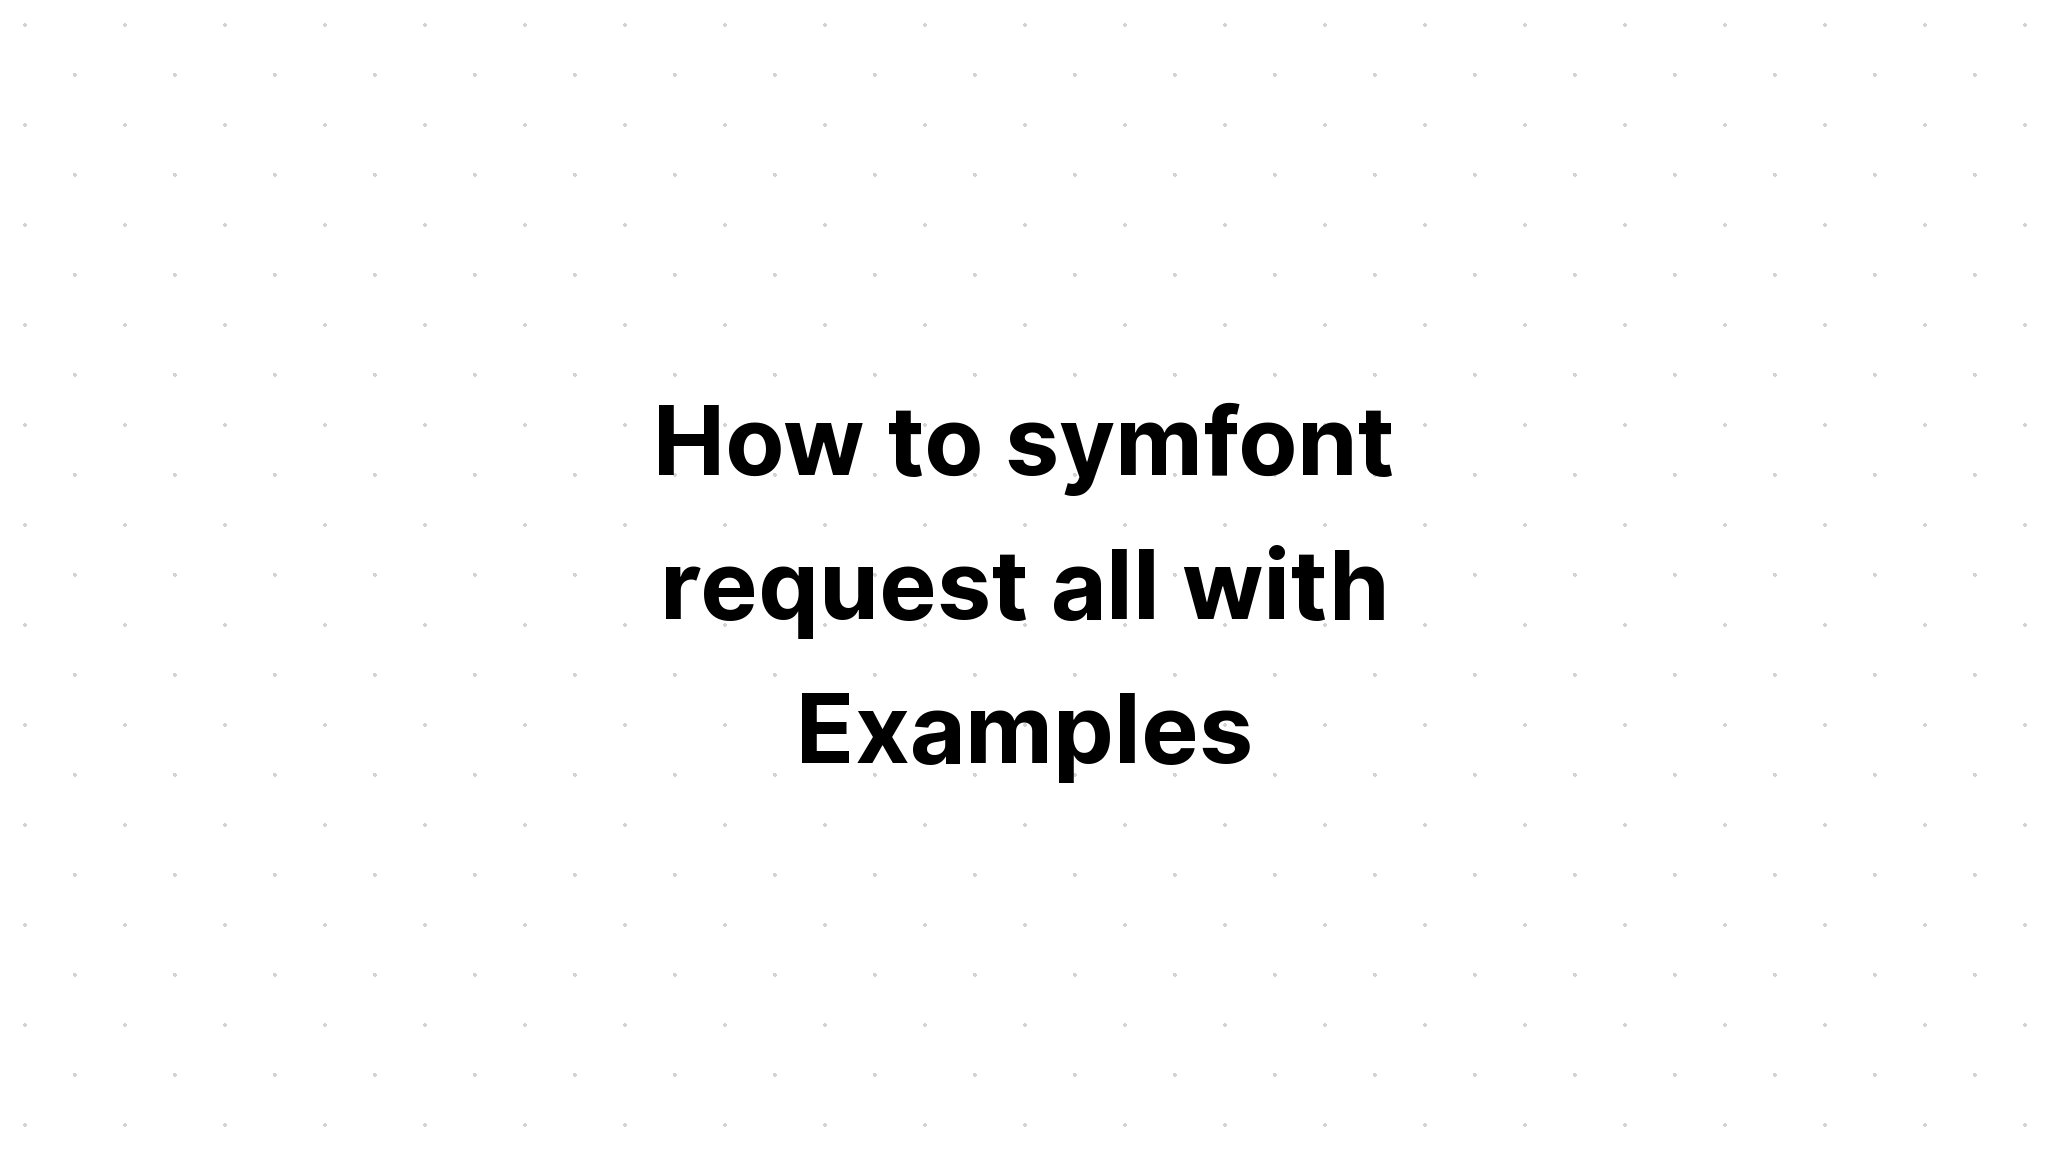 Làm thế nào để symfont yêu cầu tất cả với các ví dụ